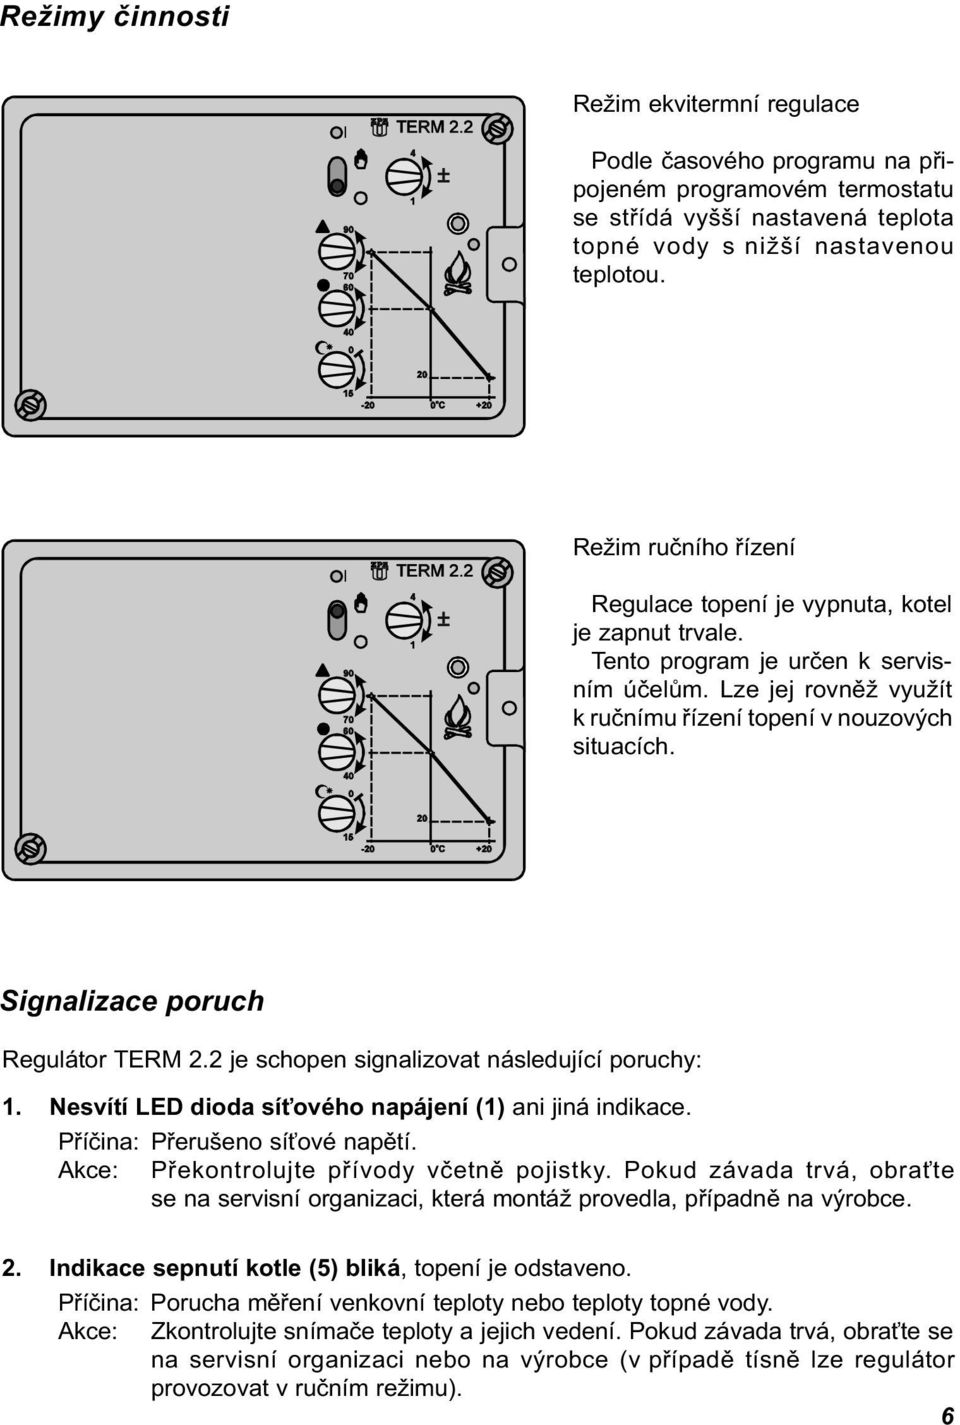 Signalizace poruch Regulátor TERM 2.2 je schopen signalizovat následující poruchy: 1. Nesvítí LED dioda sí ového napájení (1) ani jiná indikace. Pøíèina: Pøerušeno sí ové napìtí.